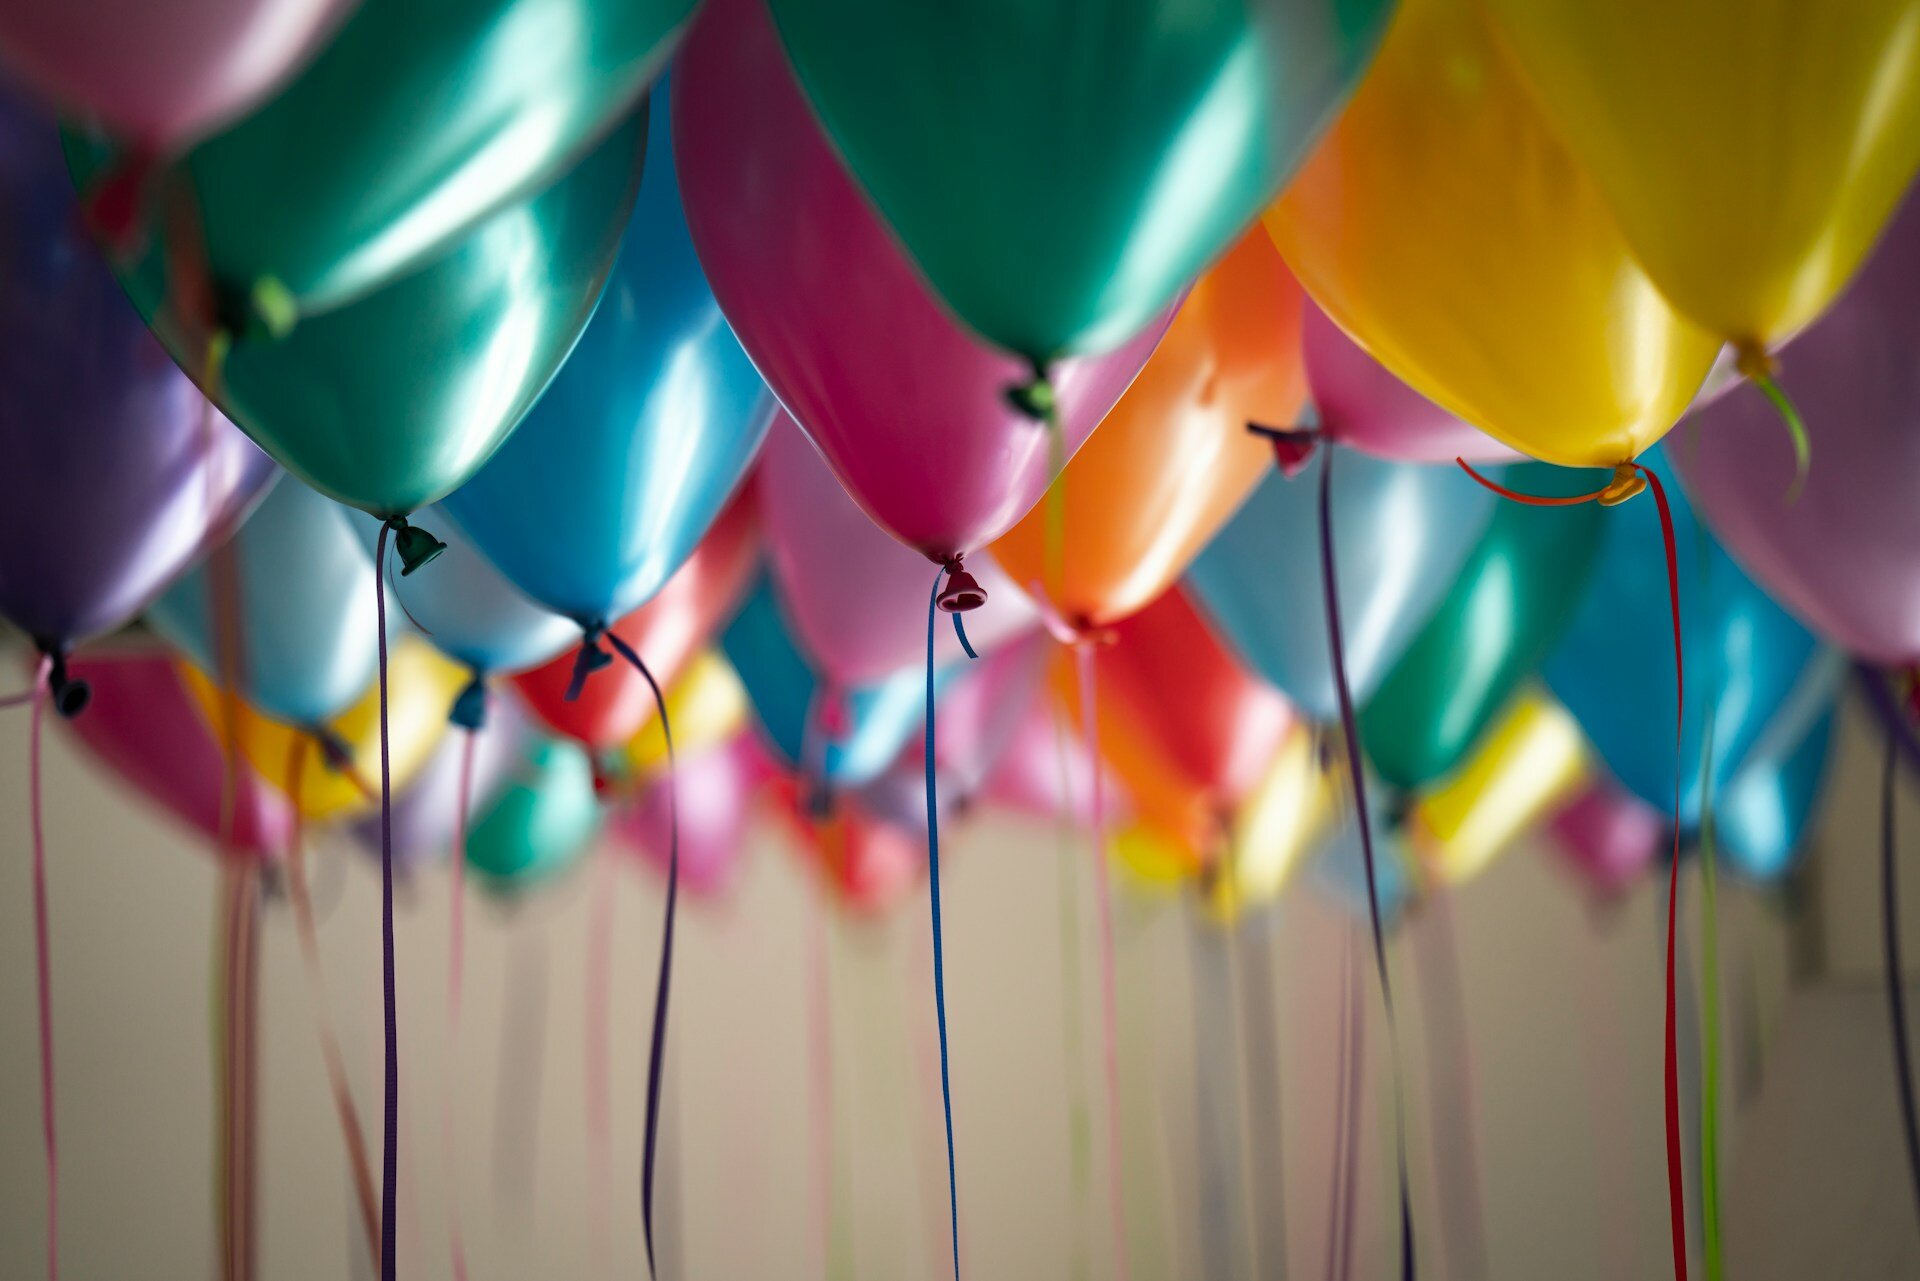 Auf dem Bild sind bunte Heliumballons zu sehen, die unter der Decke schweben und an denen bunte Bänder befestigt sind. | © Adi Goldstein